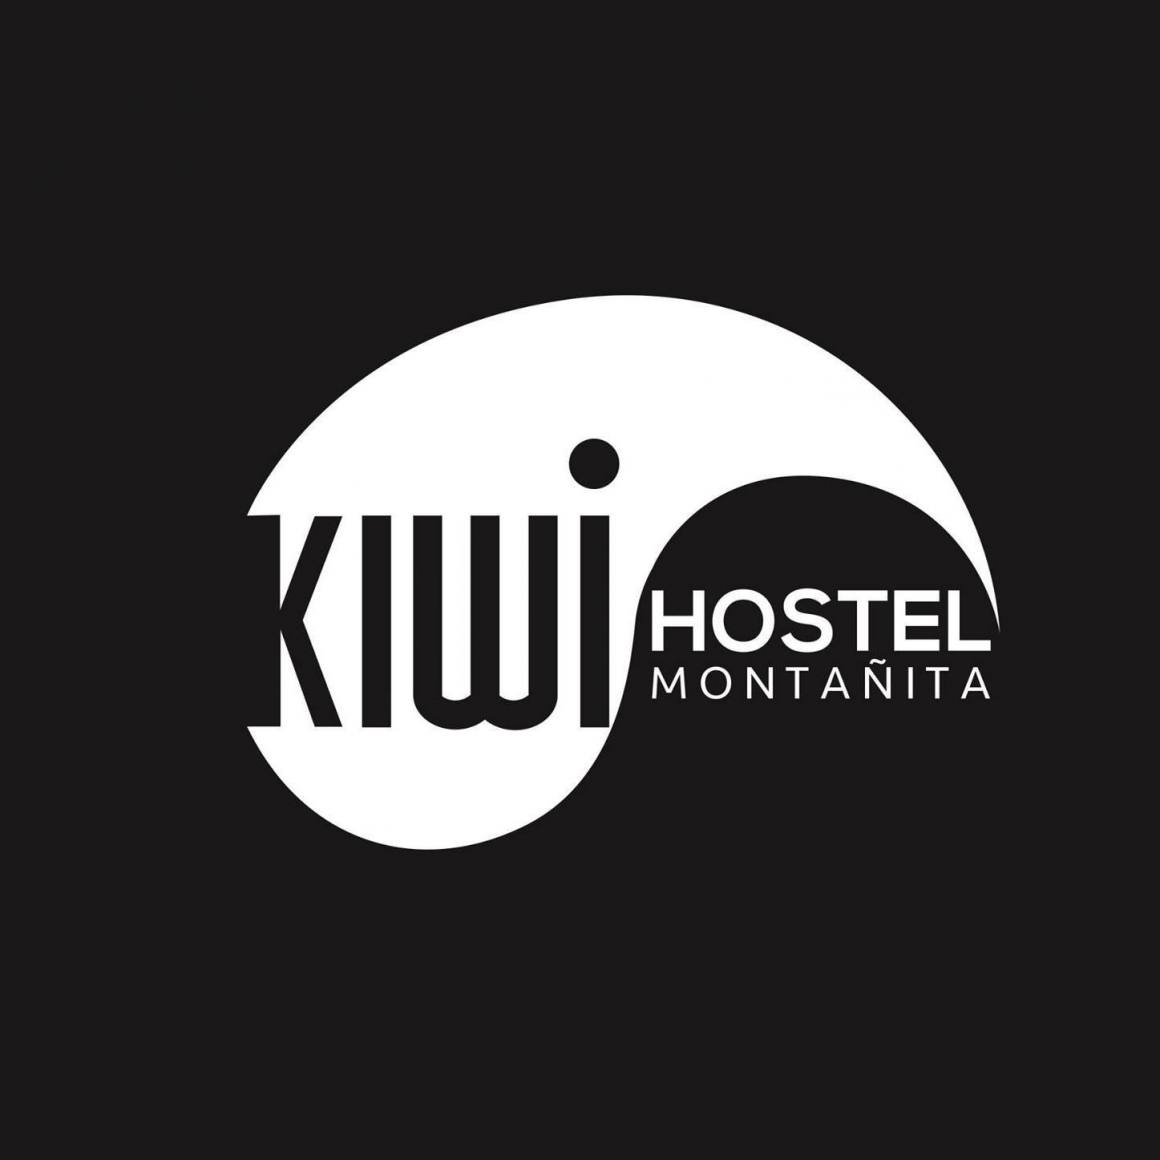 Kiwi Hostal Montañita logo 